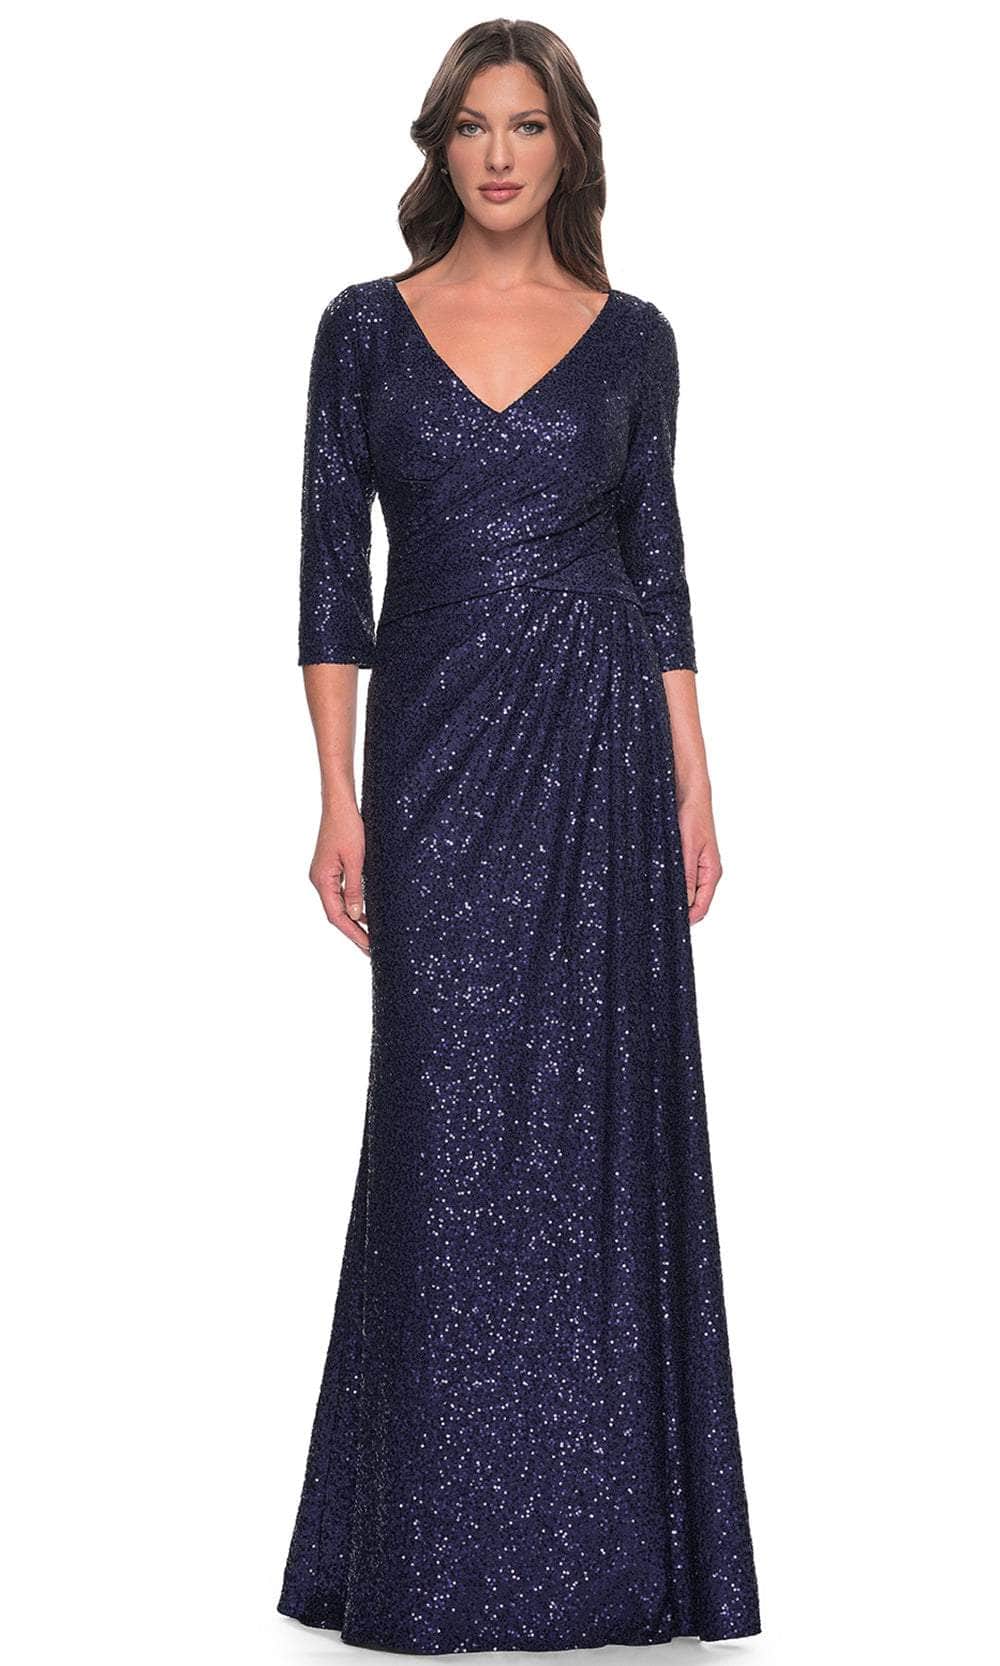 Image of La Femme 30879 - Sequin A-Line Formal Dress